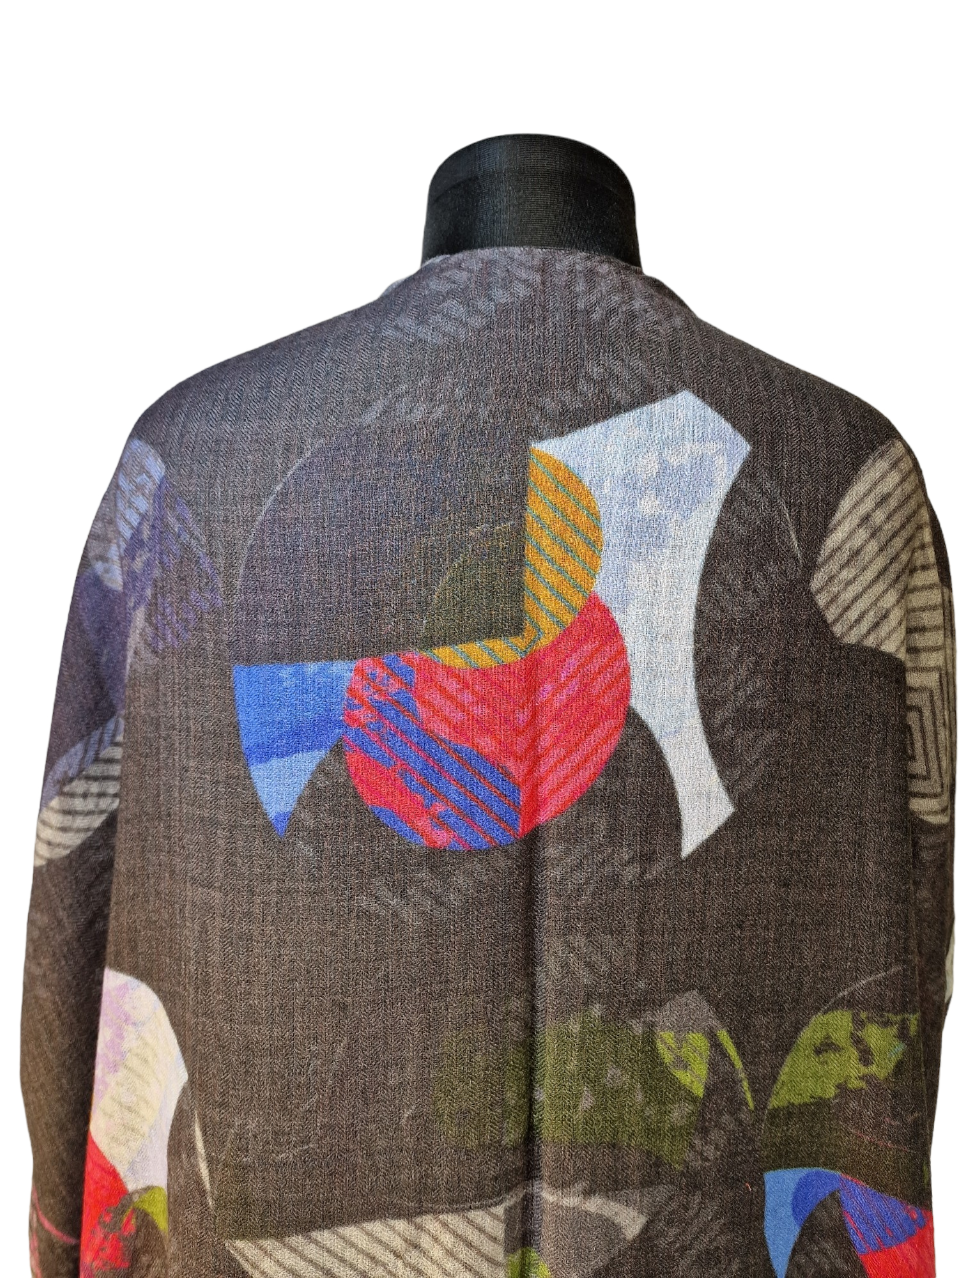 Sort sjal-jakke med mystisk mønster (14)